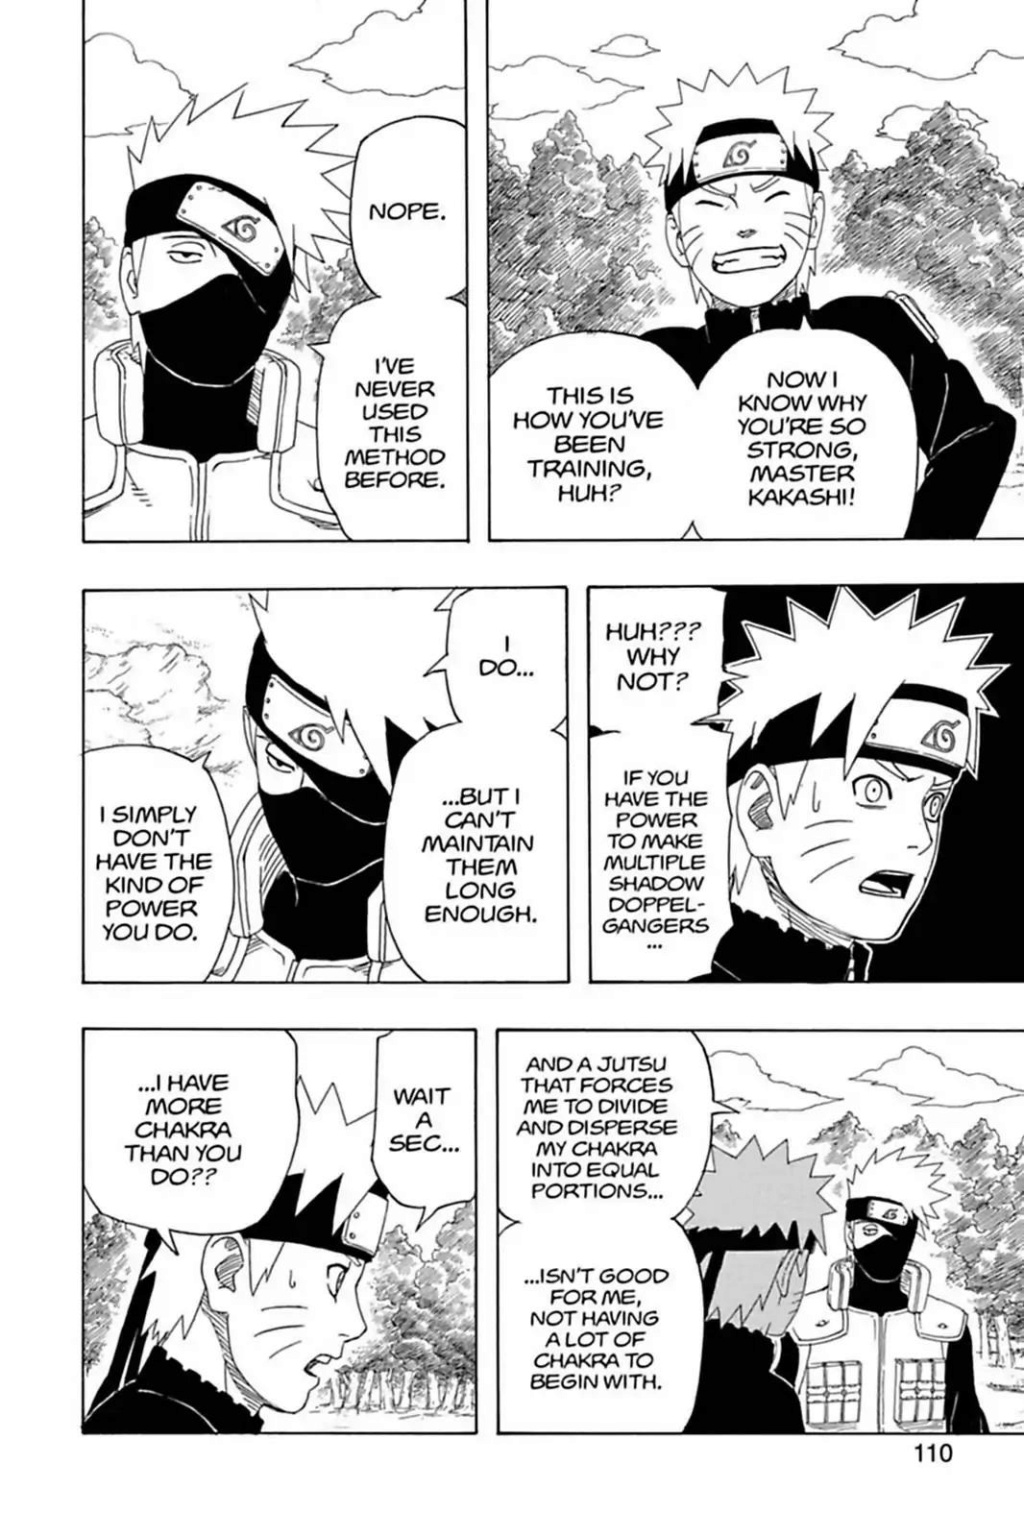 [Argumentação]  "Panini" é direta na tradução e coloca a Sakura falando explicitamente que tem vantagem sobre a Tsunade! - Página 5 10_21810